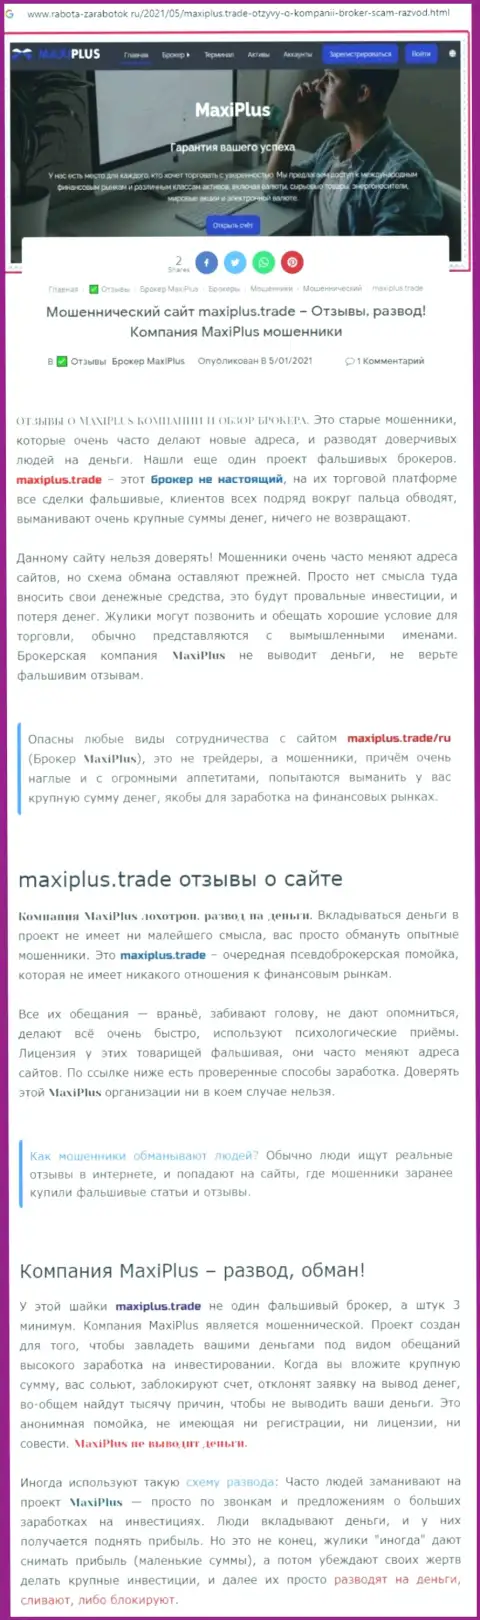 Maxi Plus - МОШЕННИКИ !!! Принцип деятельности ЛОХОТРОНА (обзор проделок)